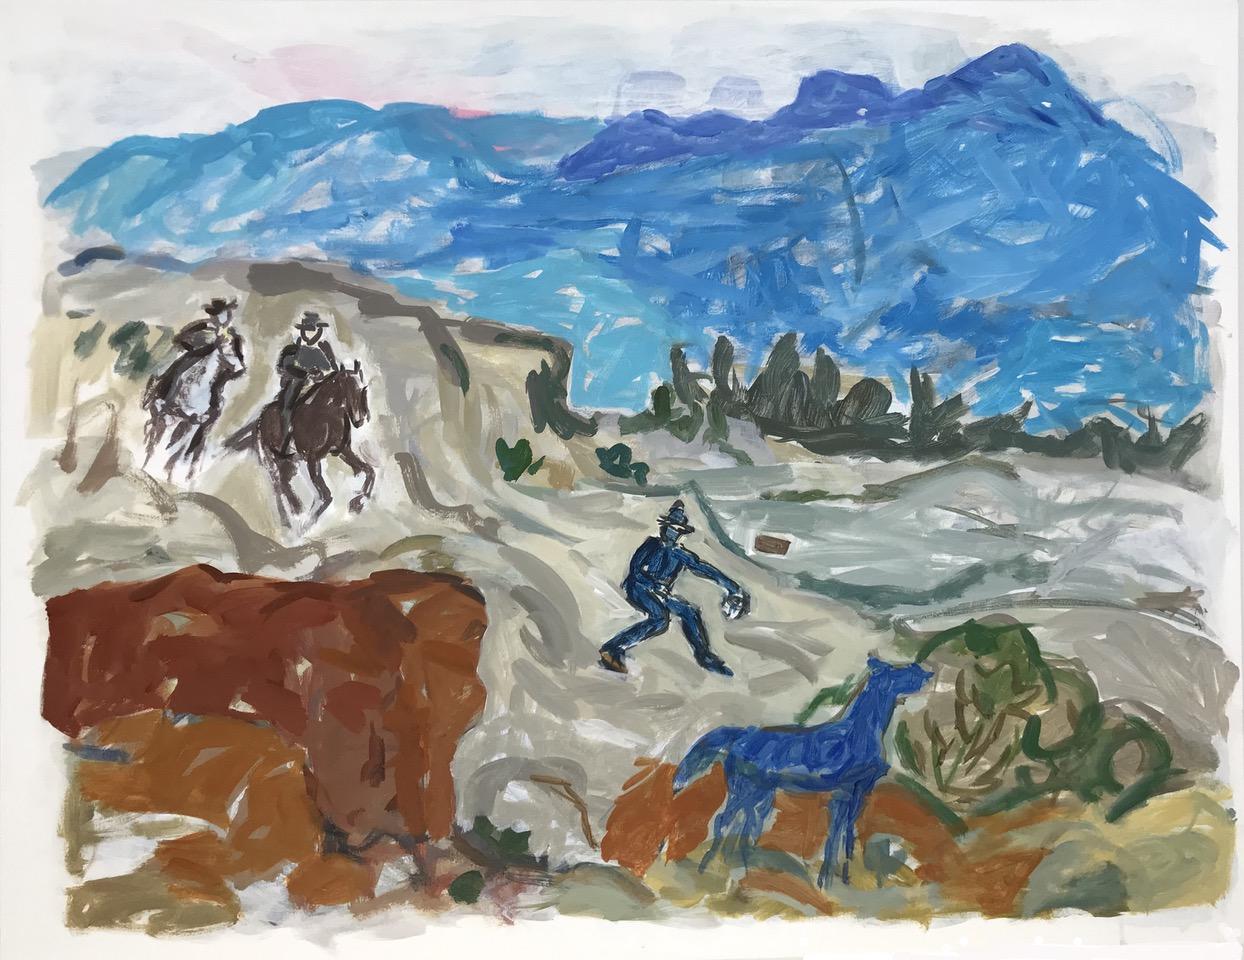 Figurative Painting Linda Blackburn - Scène de cow-boy impressionniste abstraite contemporaine d'un paysage de l'Ouest avec cheval 